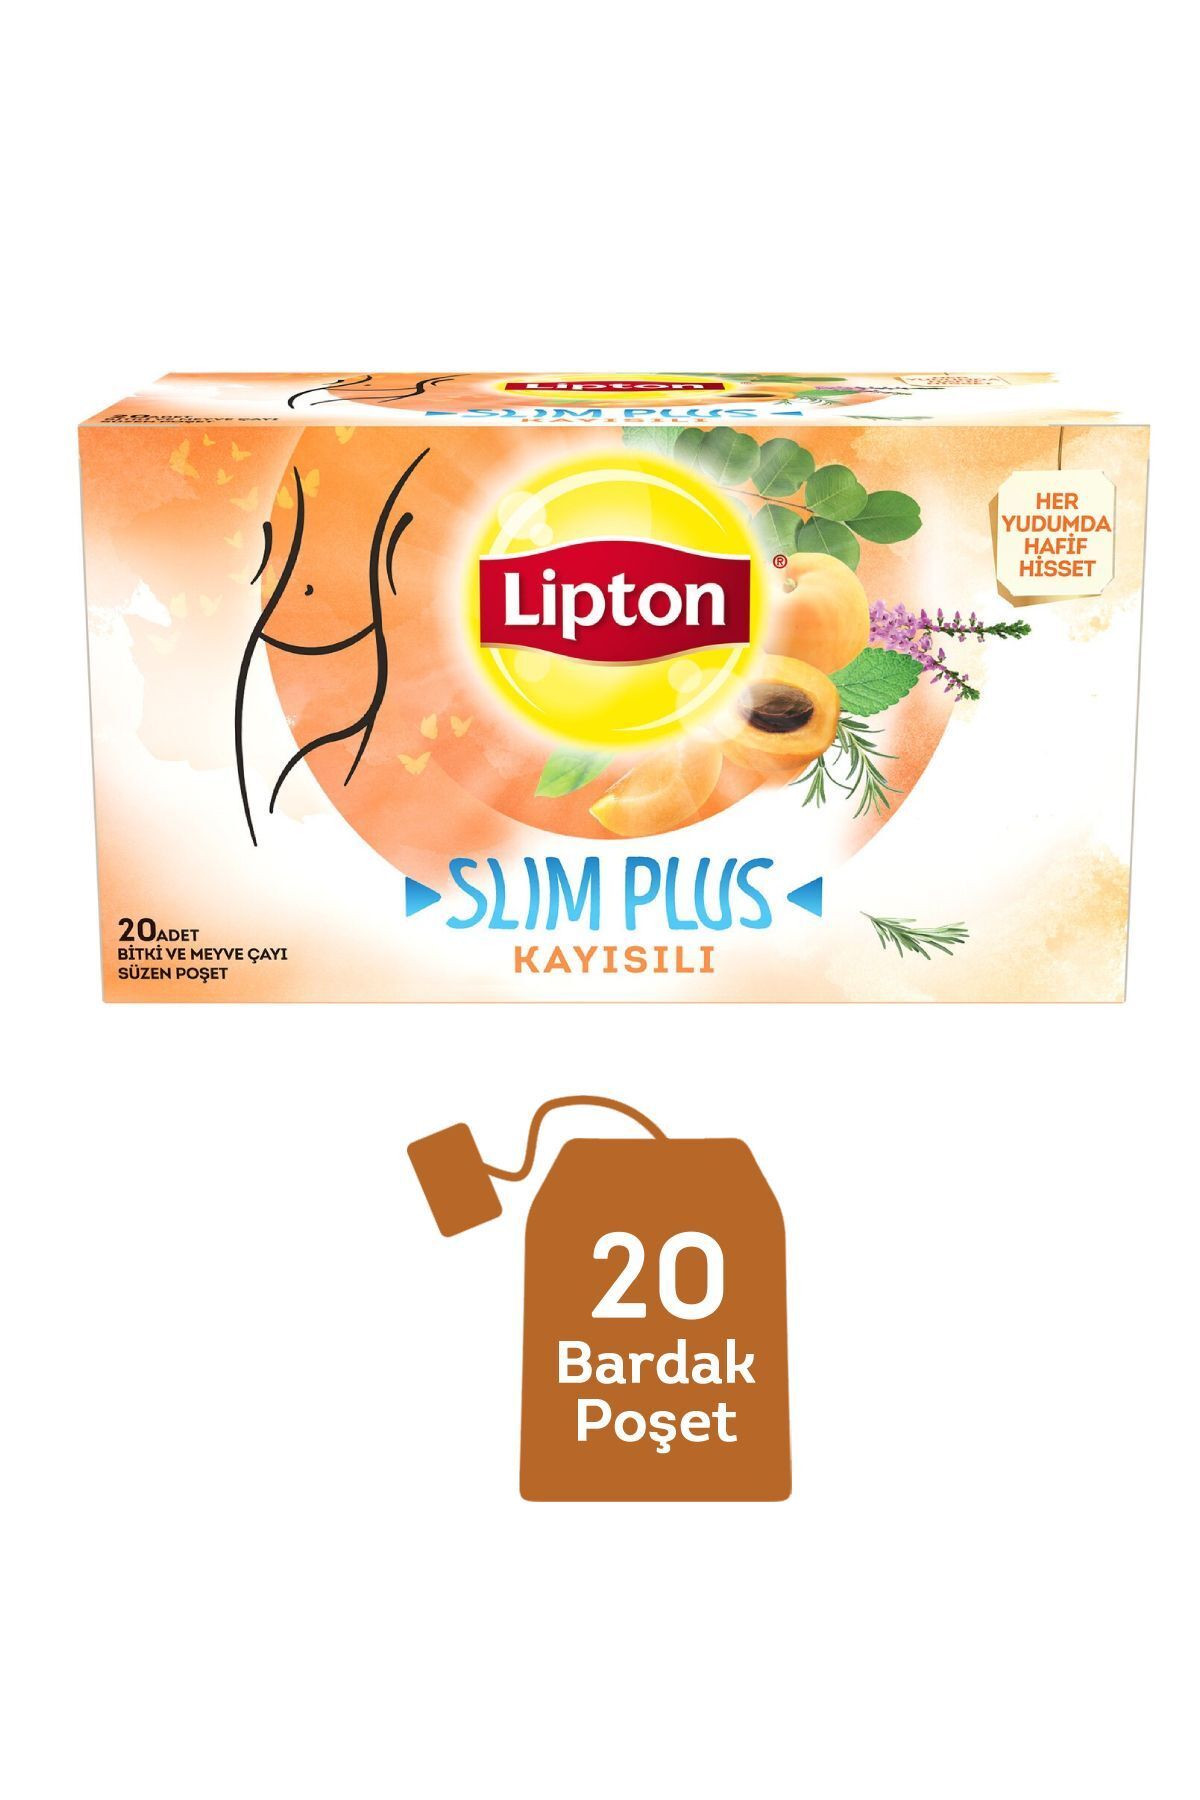 Lipton Slim Plus Kayısılı 20'li 36 G